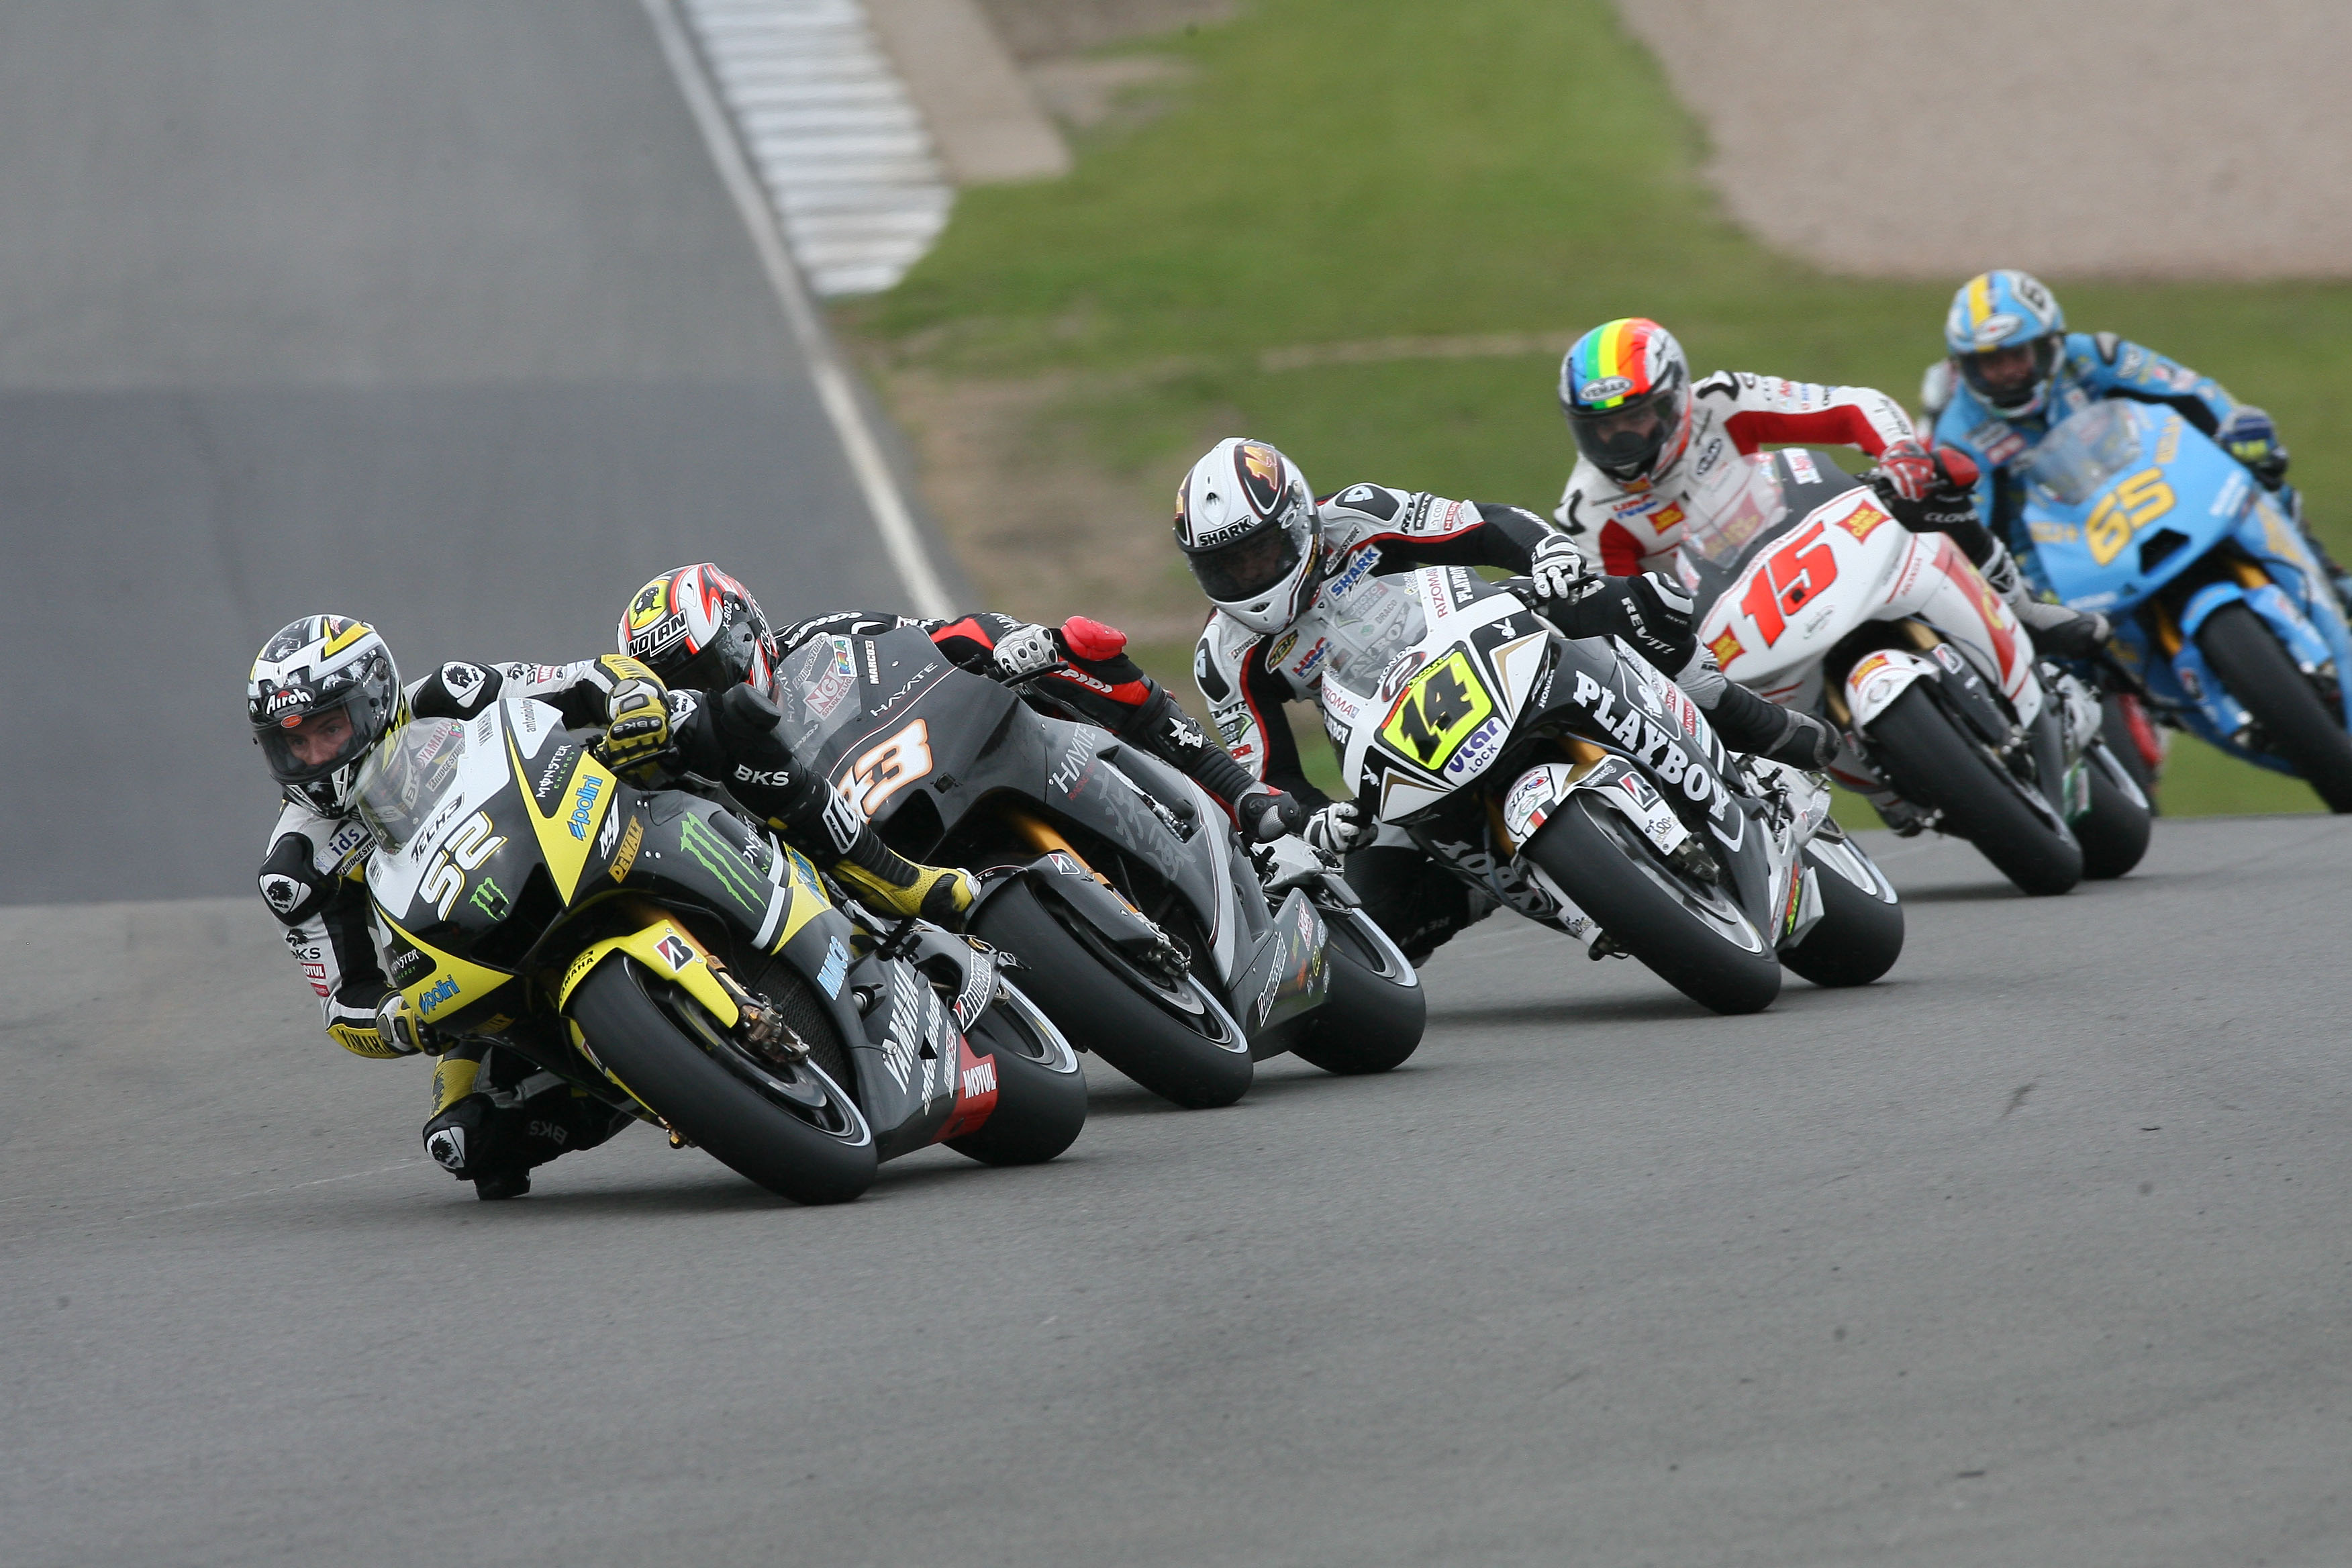 Donington Park to host 2015 British MotoGP round